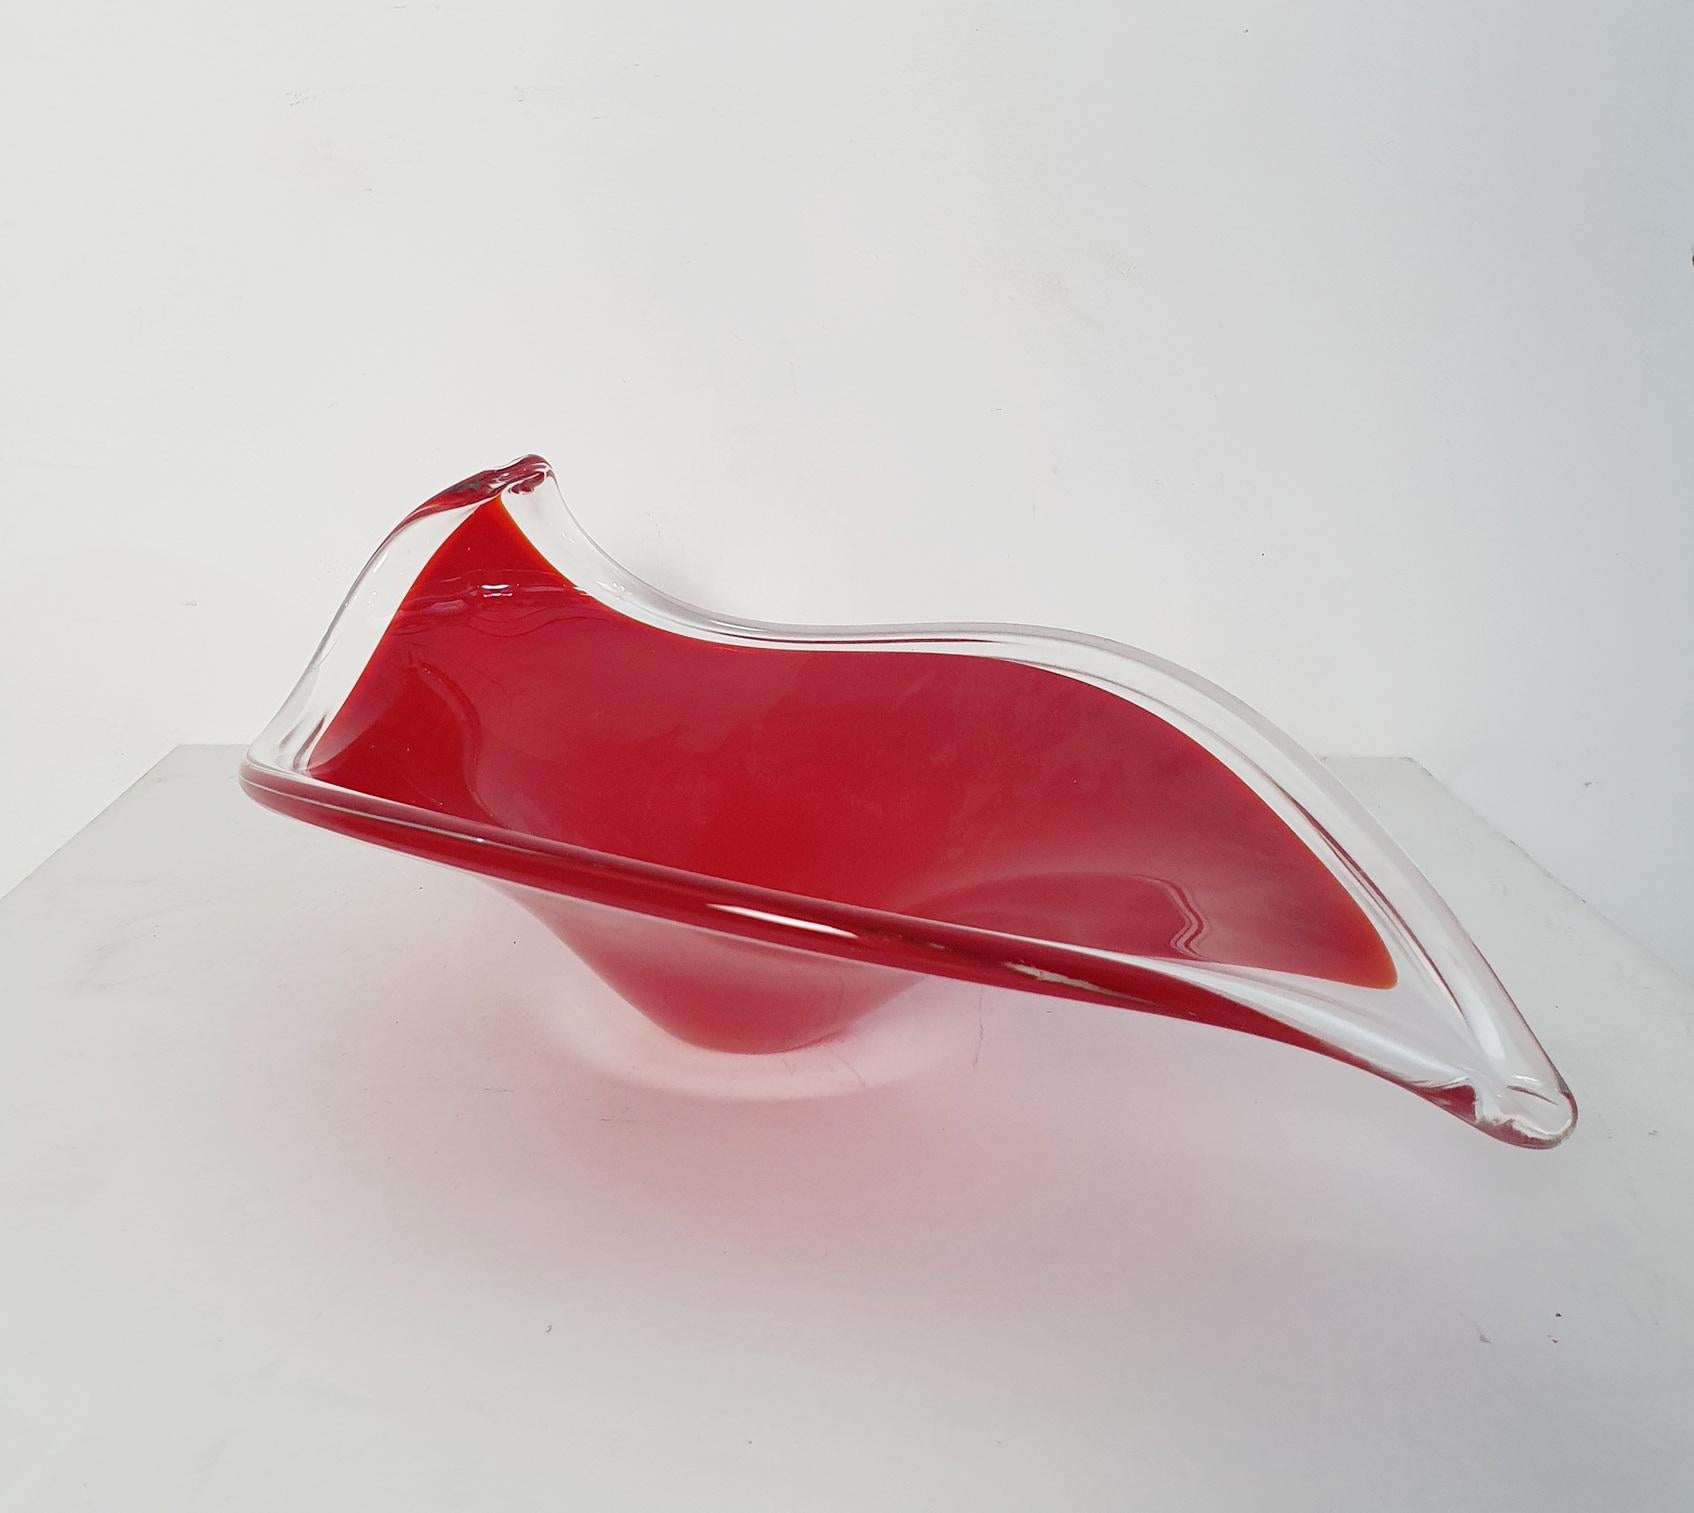 Décoratif et méticuleusement réalisé en verre de Murano, ce bol présente une forme de feuille caractéristique et un poids substantiel. Le jeu du verre rouge et du verre transparent forme un mélange harmonieux, façonné à la main de manière experte.